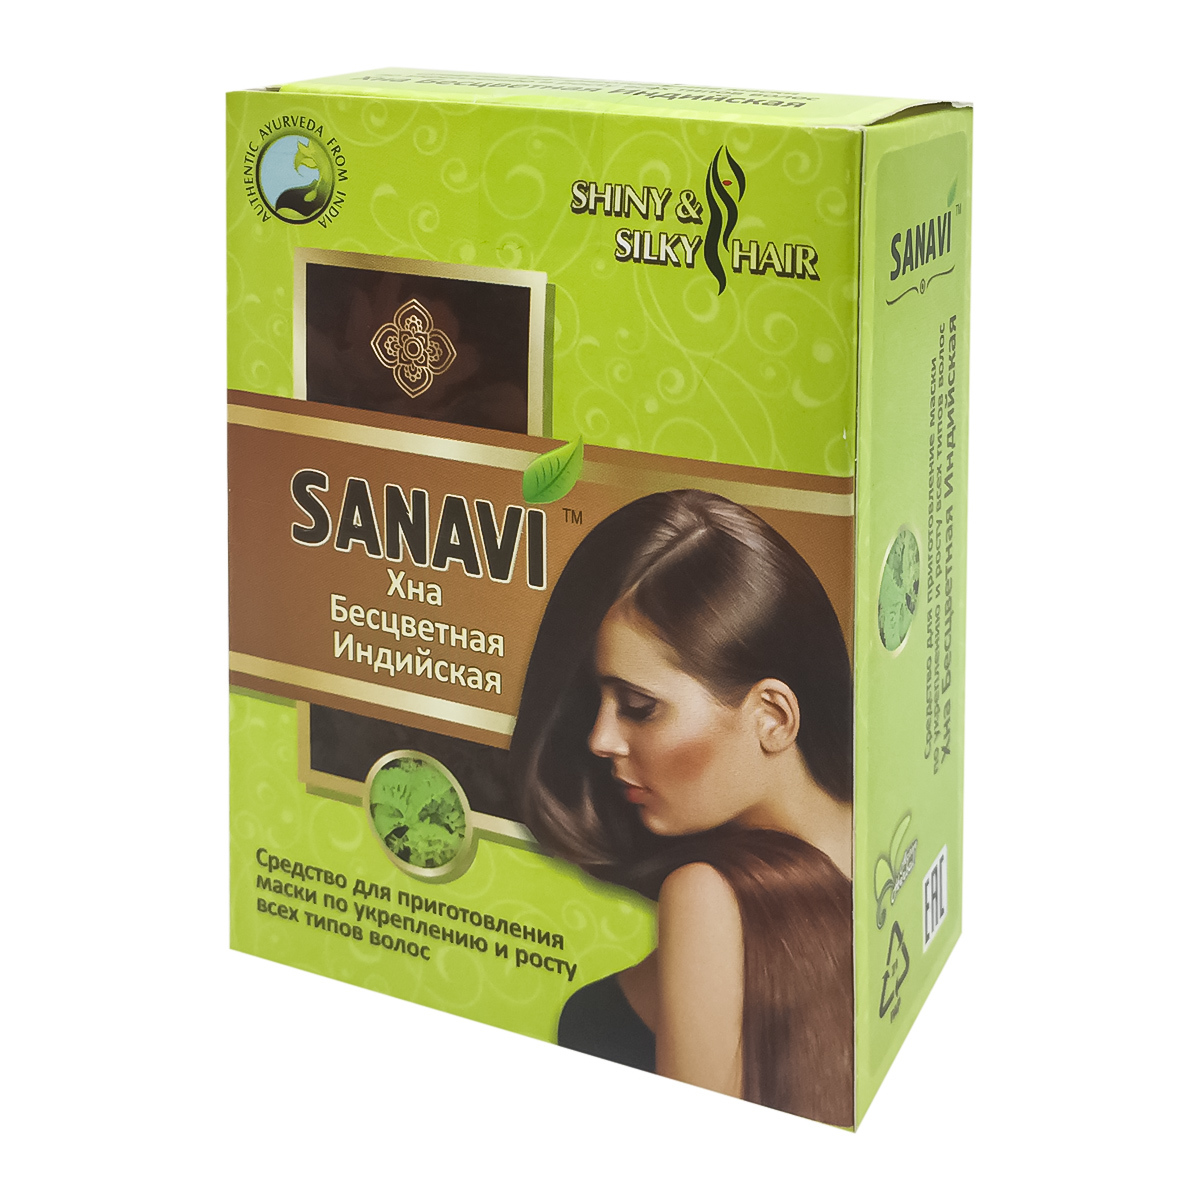 Хна Sanavi бесцветная 100 г краска для волос на основе хны красное дерево sanavi 75г